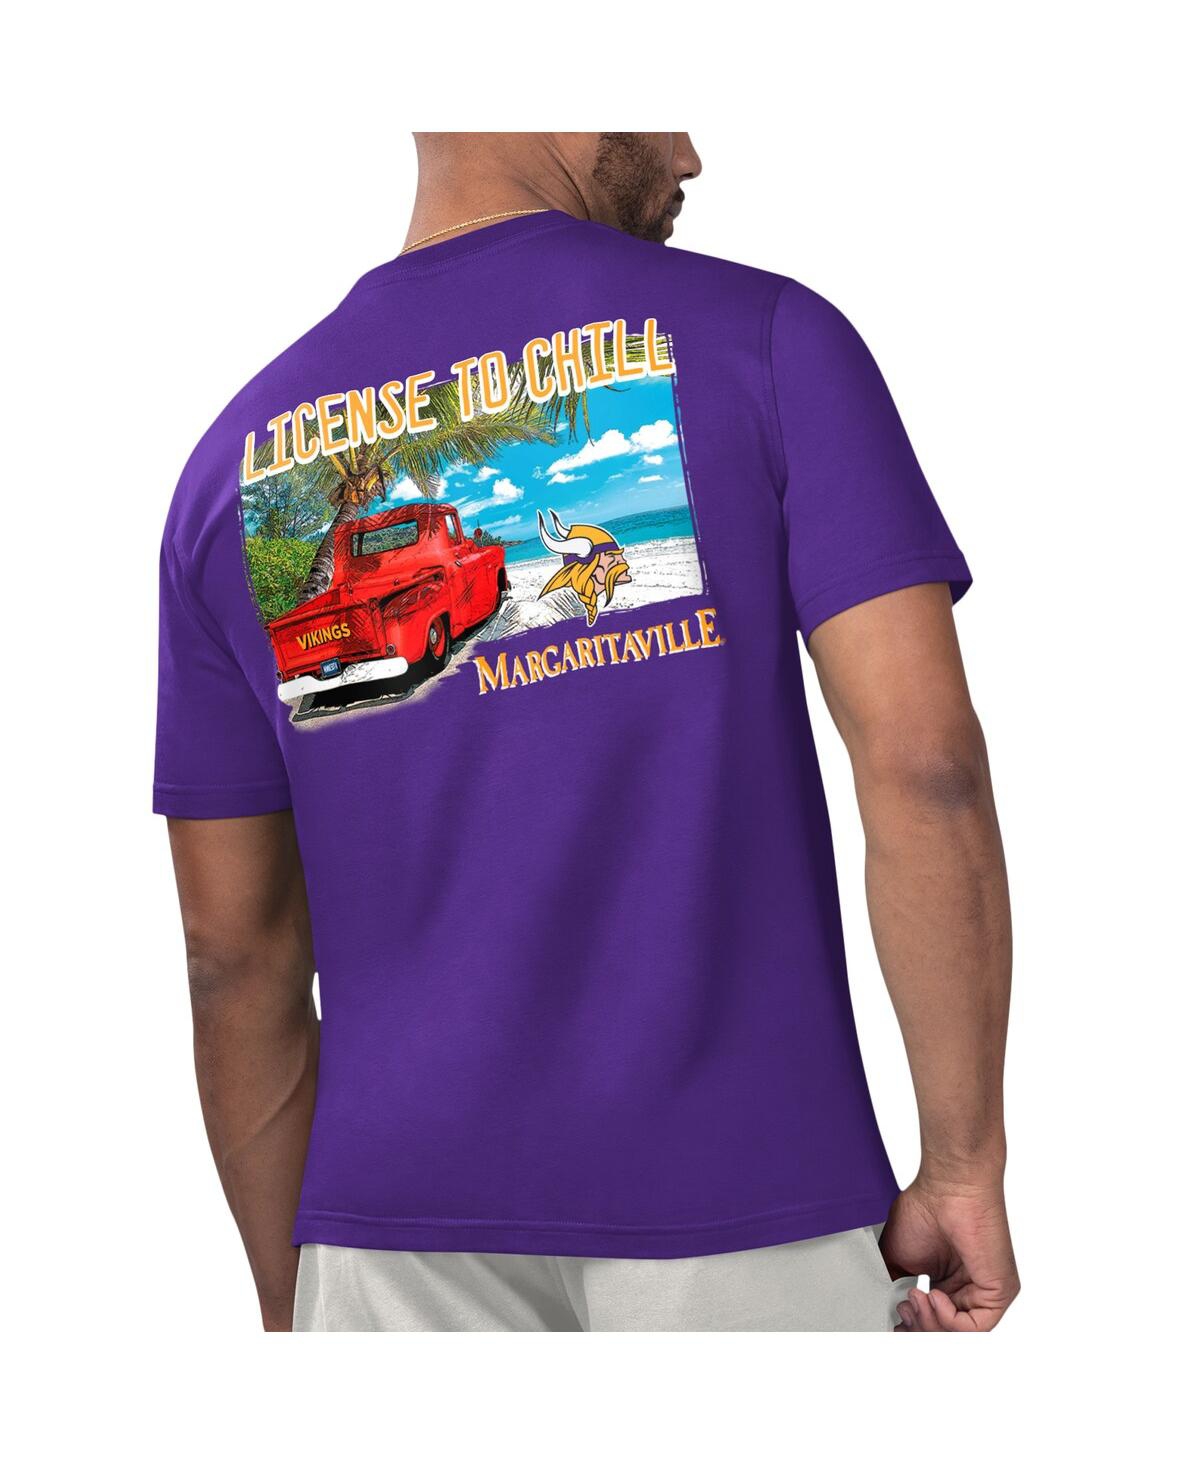 Shop Margaritaville Men's  Purple Minnesota Vikings Licensed To Chill T-shirt